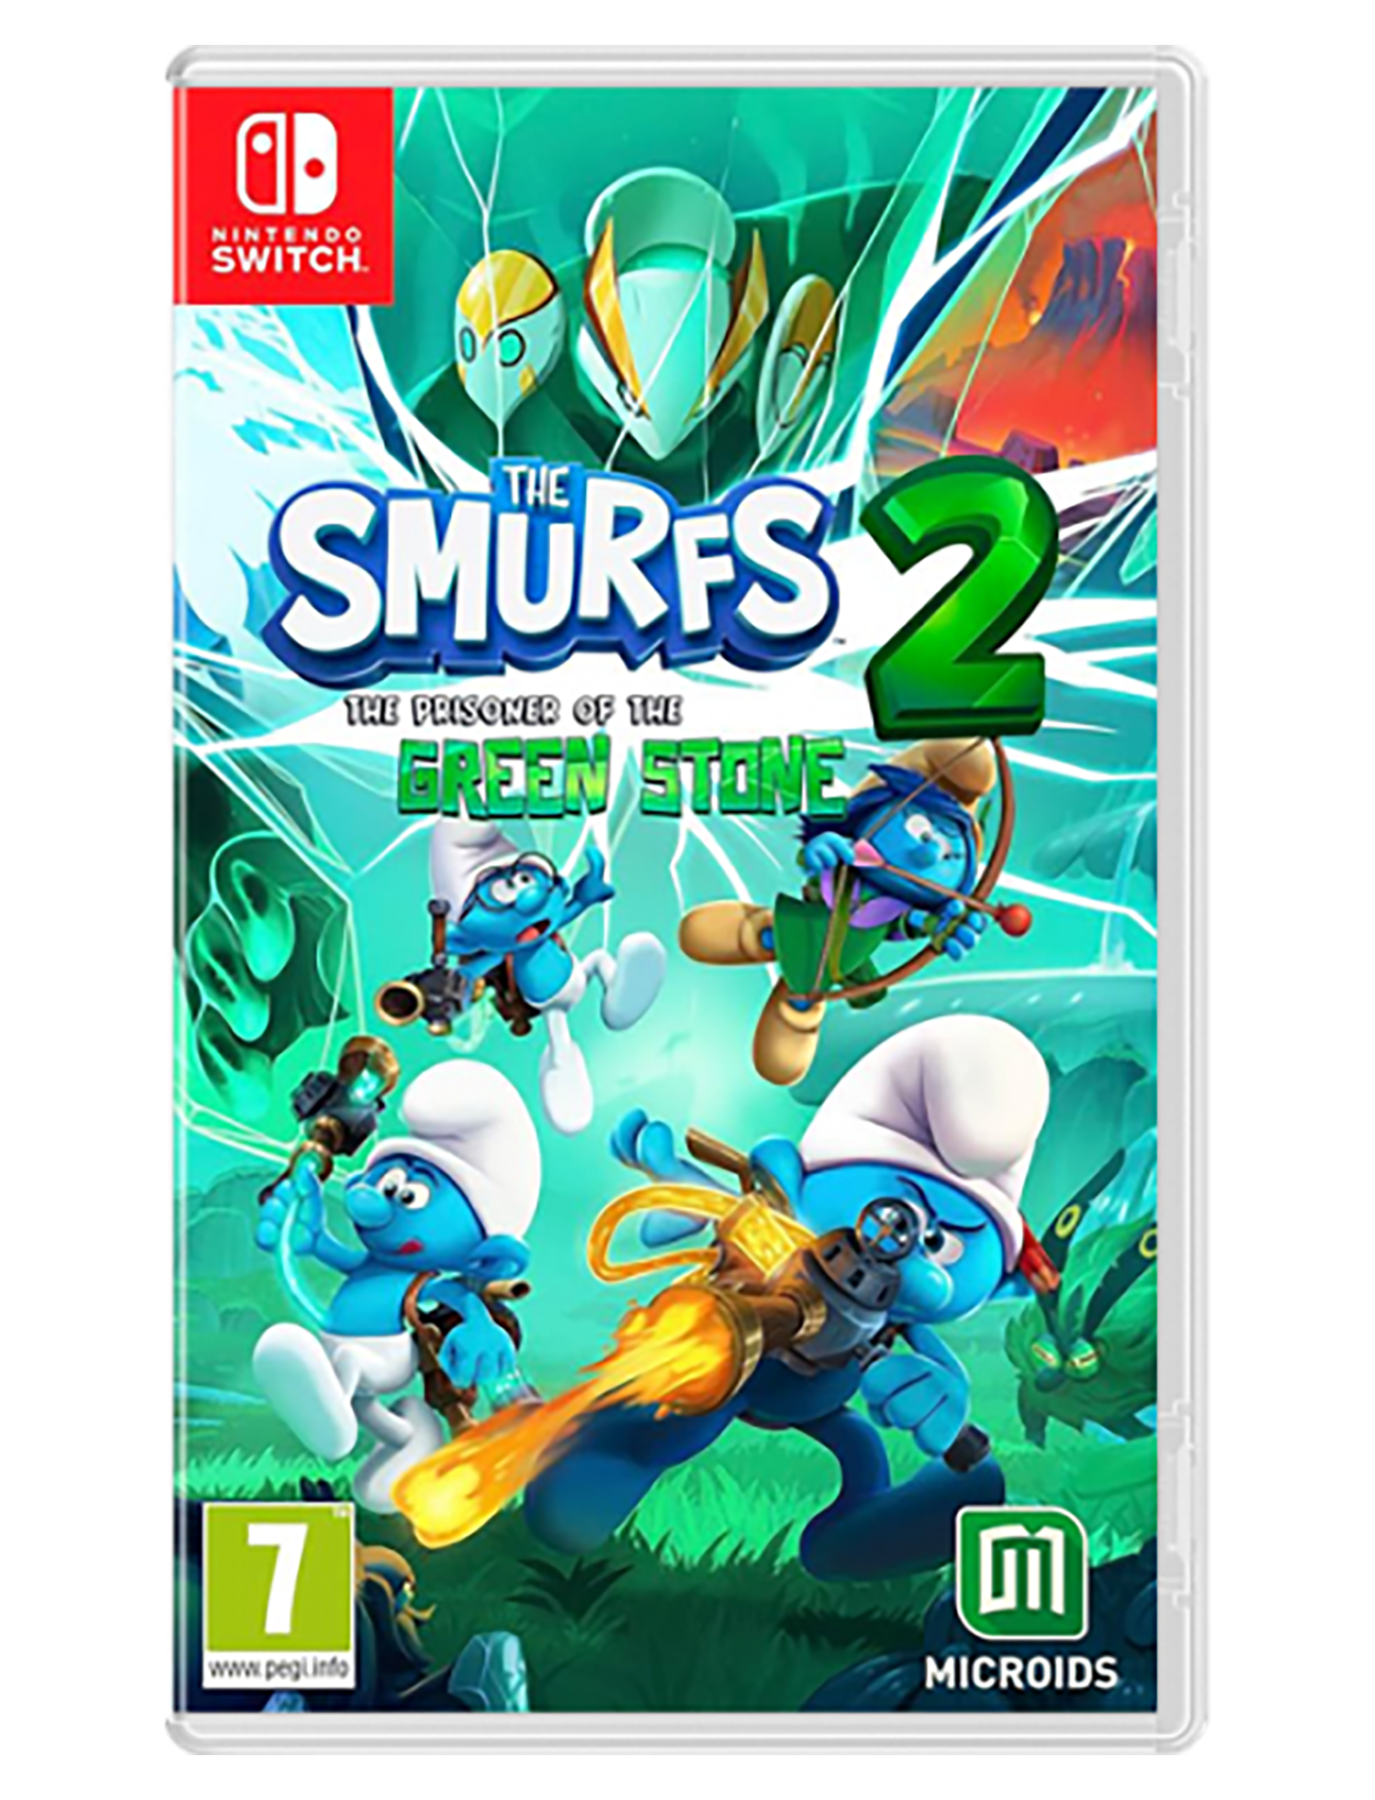 The Smurfs 2: Prisoner of the Green Stone nintendo